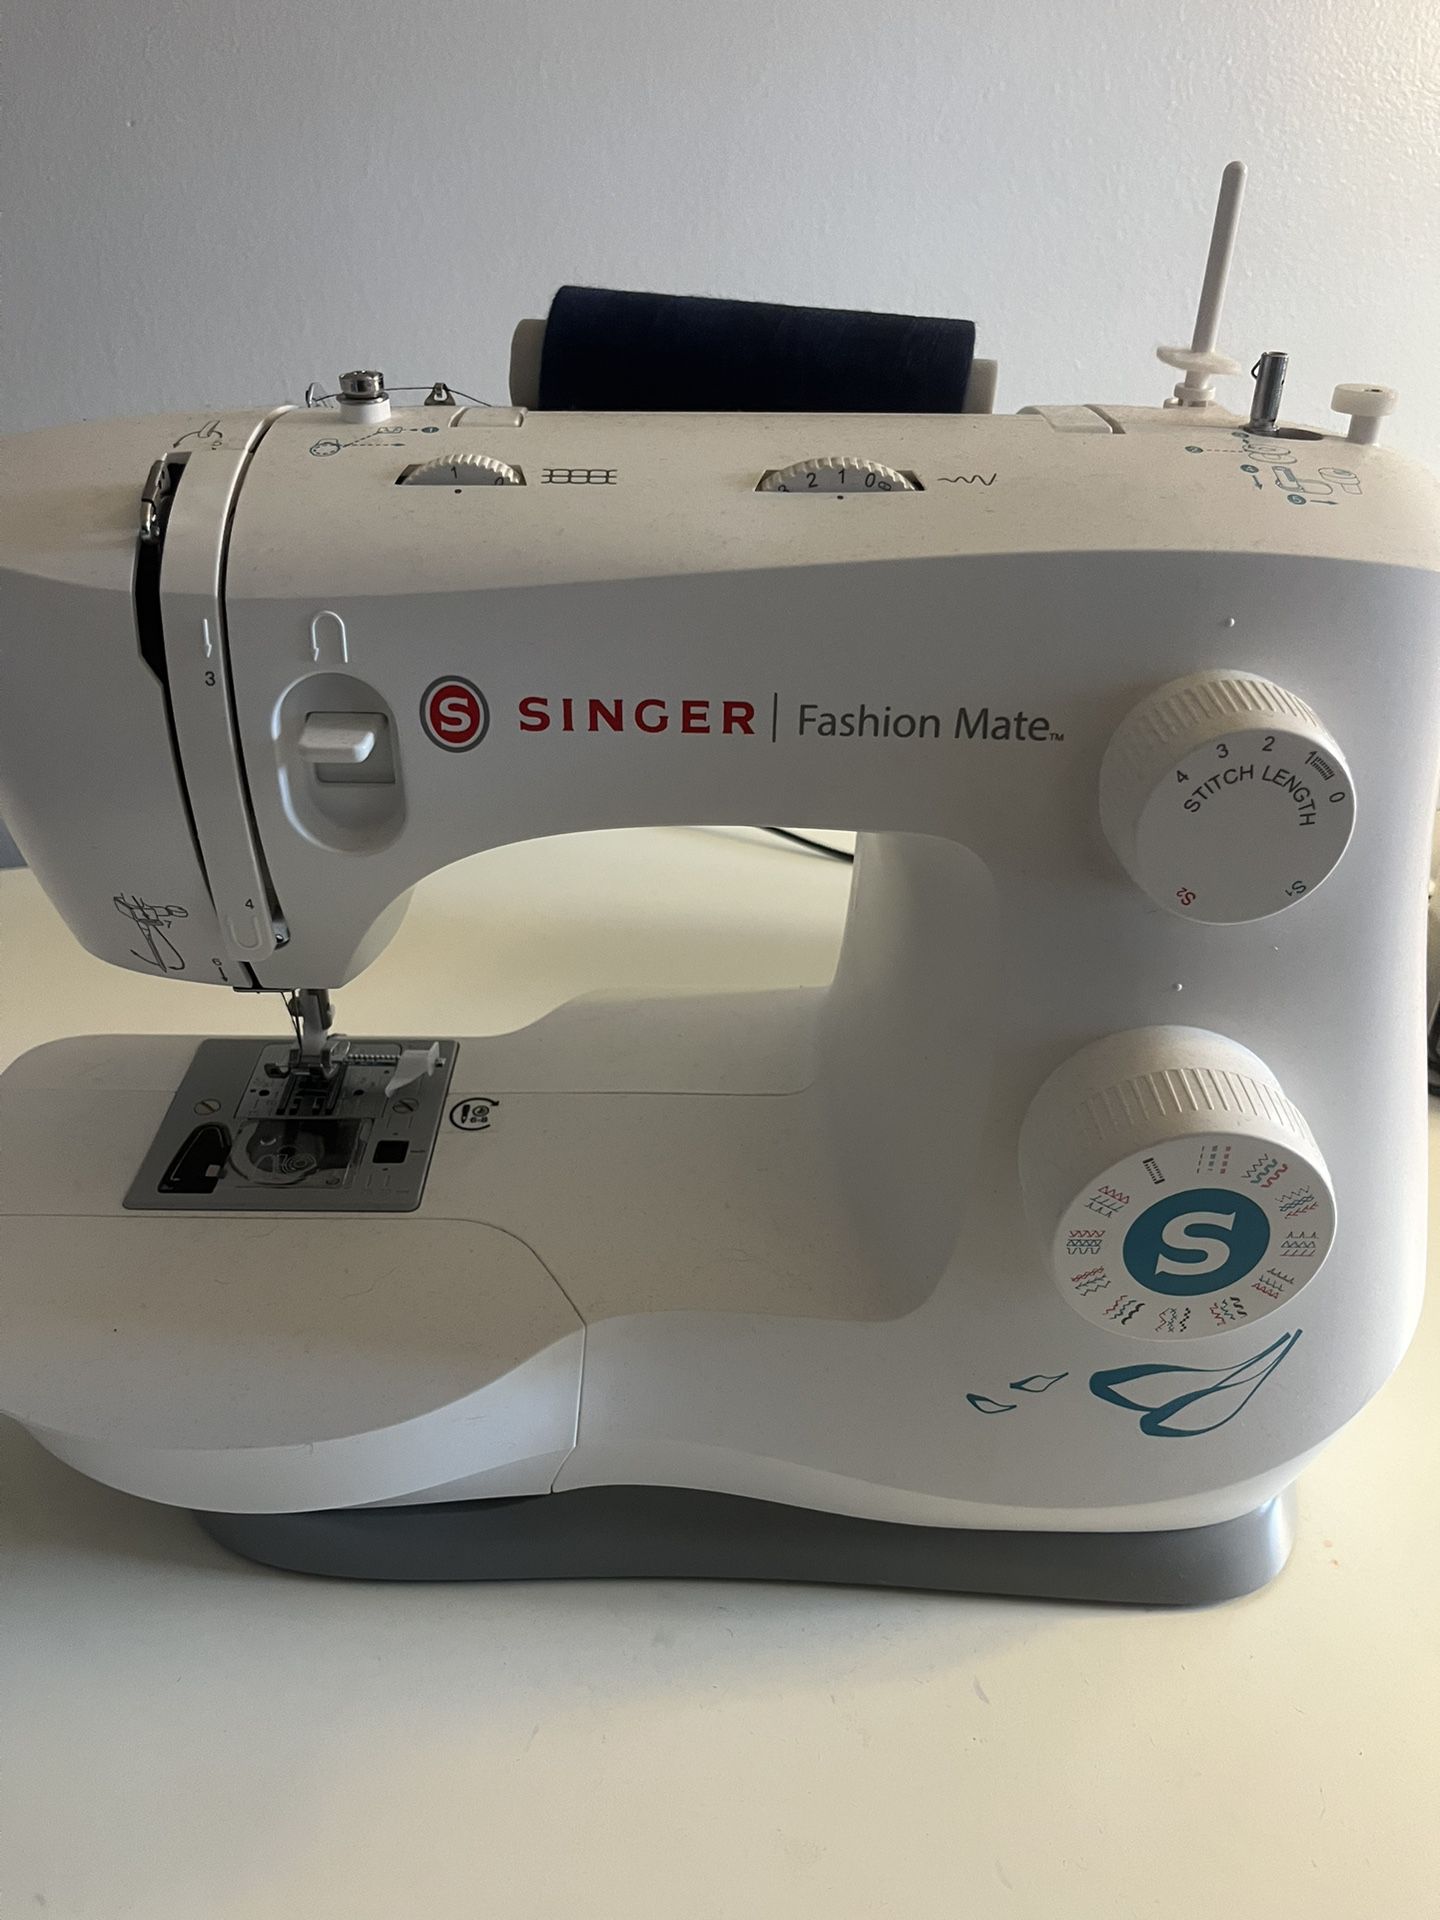 Singer Fashion Mate Sewing Machine. 